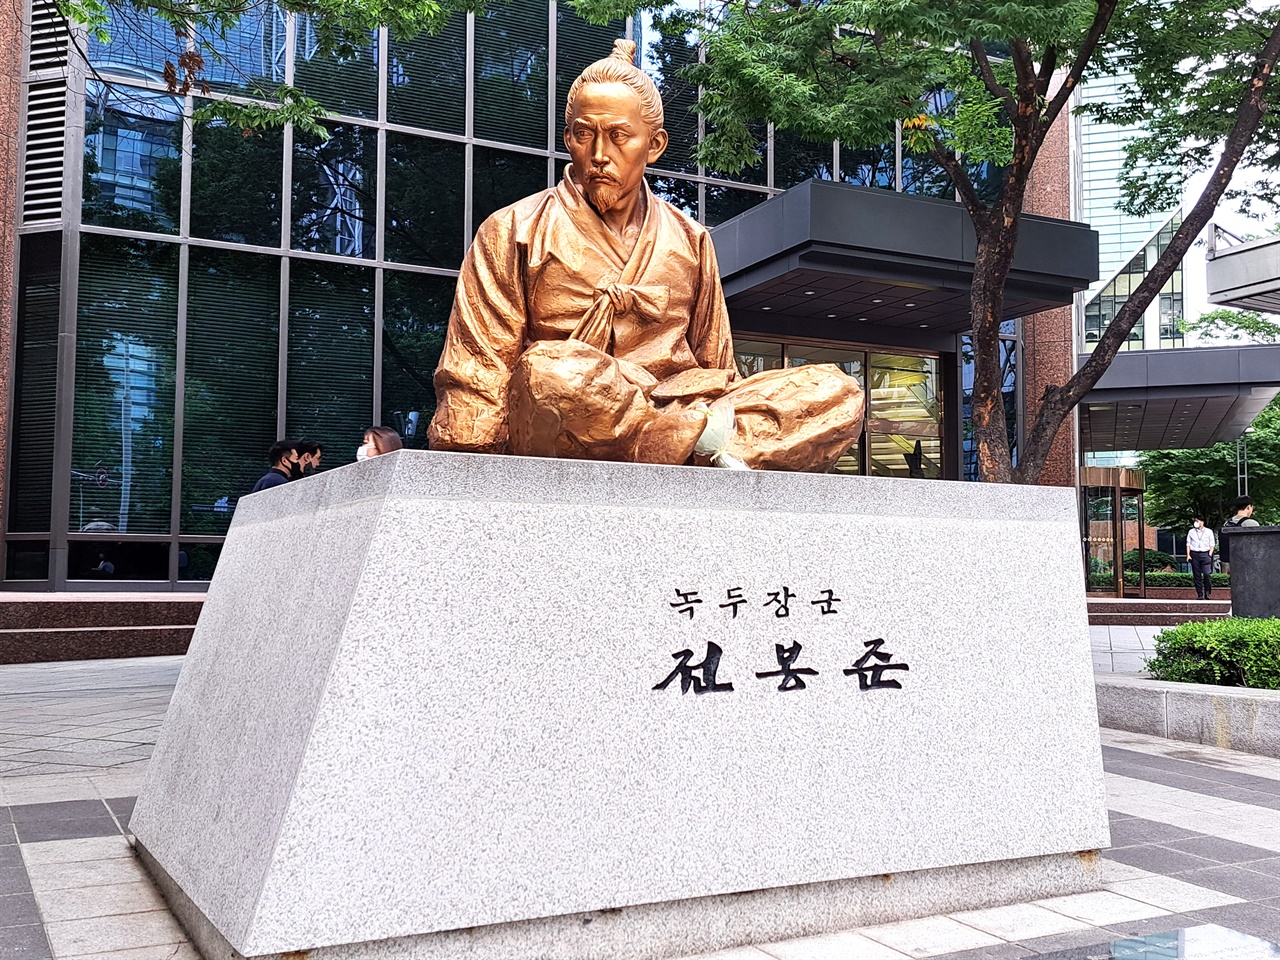 의금부가 있던 자리 맞은 편 종로1가 사거리에 있는 전봉준 장군 동상.